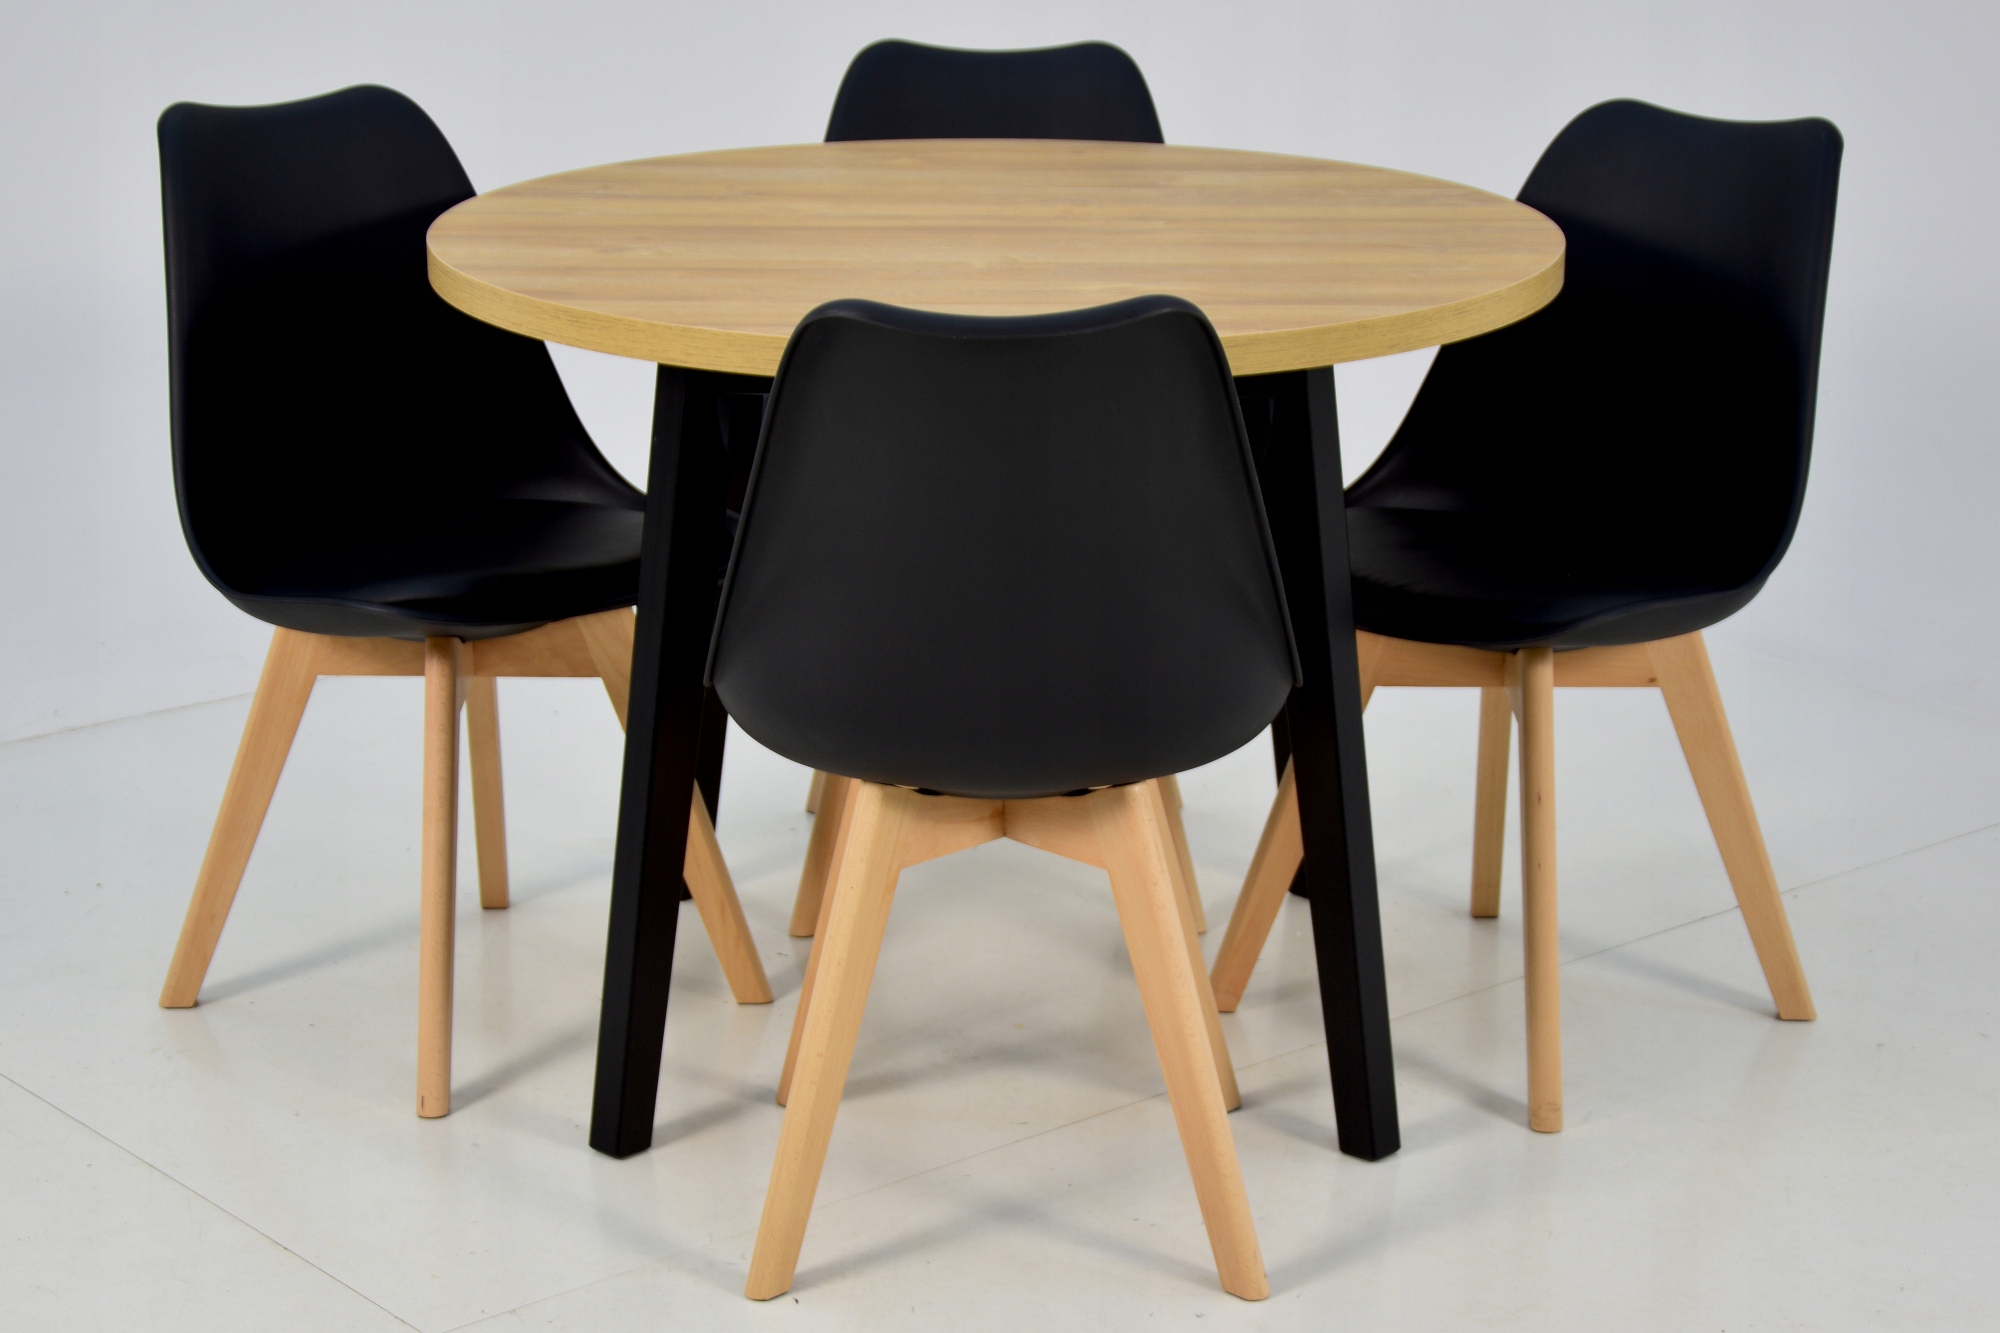 4 скандинавських стільця + круглий стіл 100 см. Висота столу 75 см